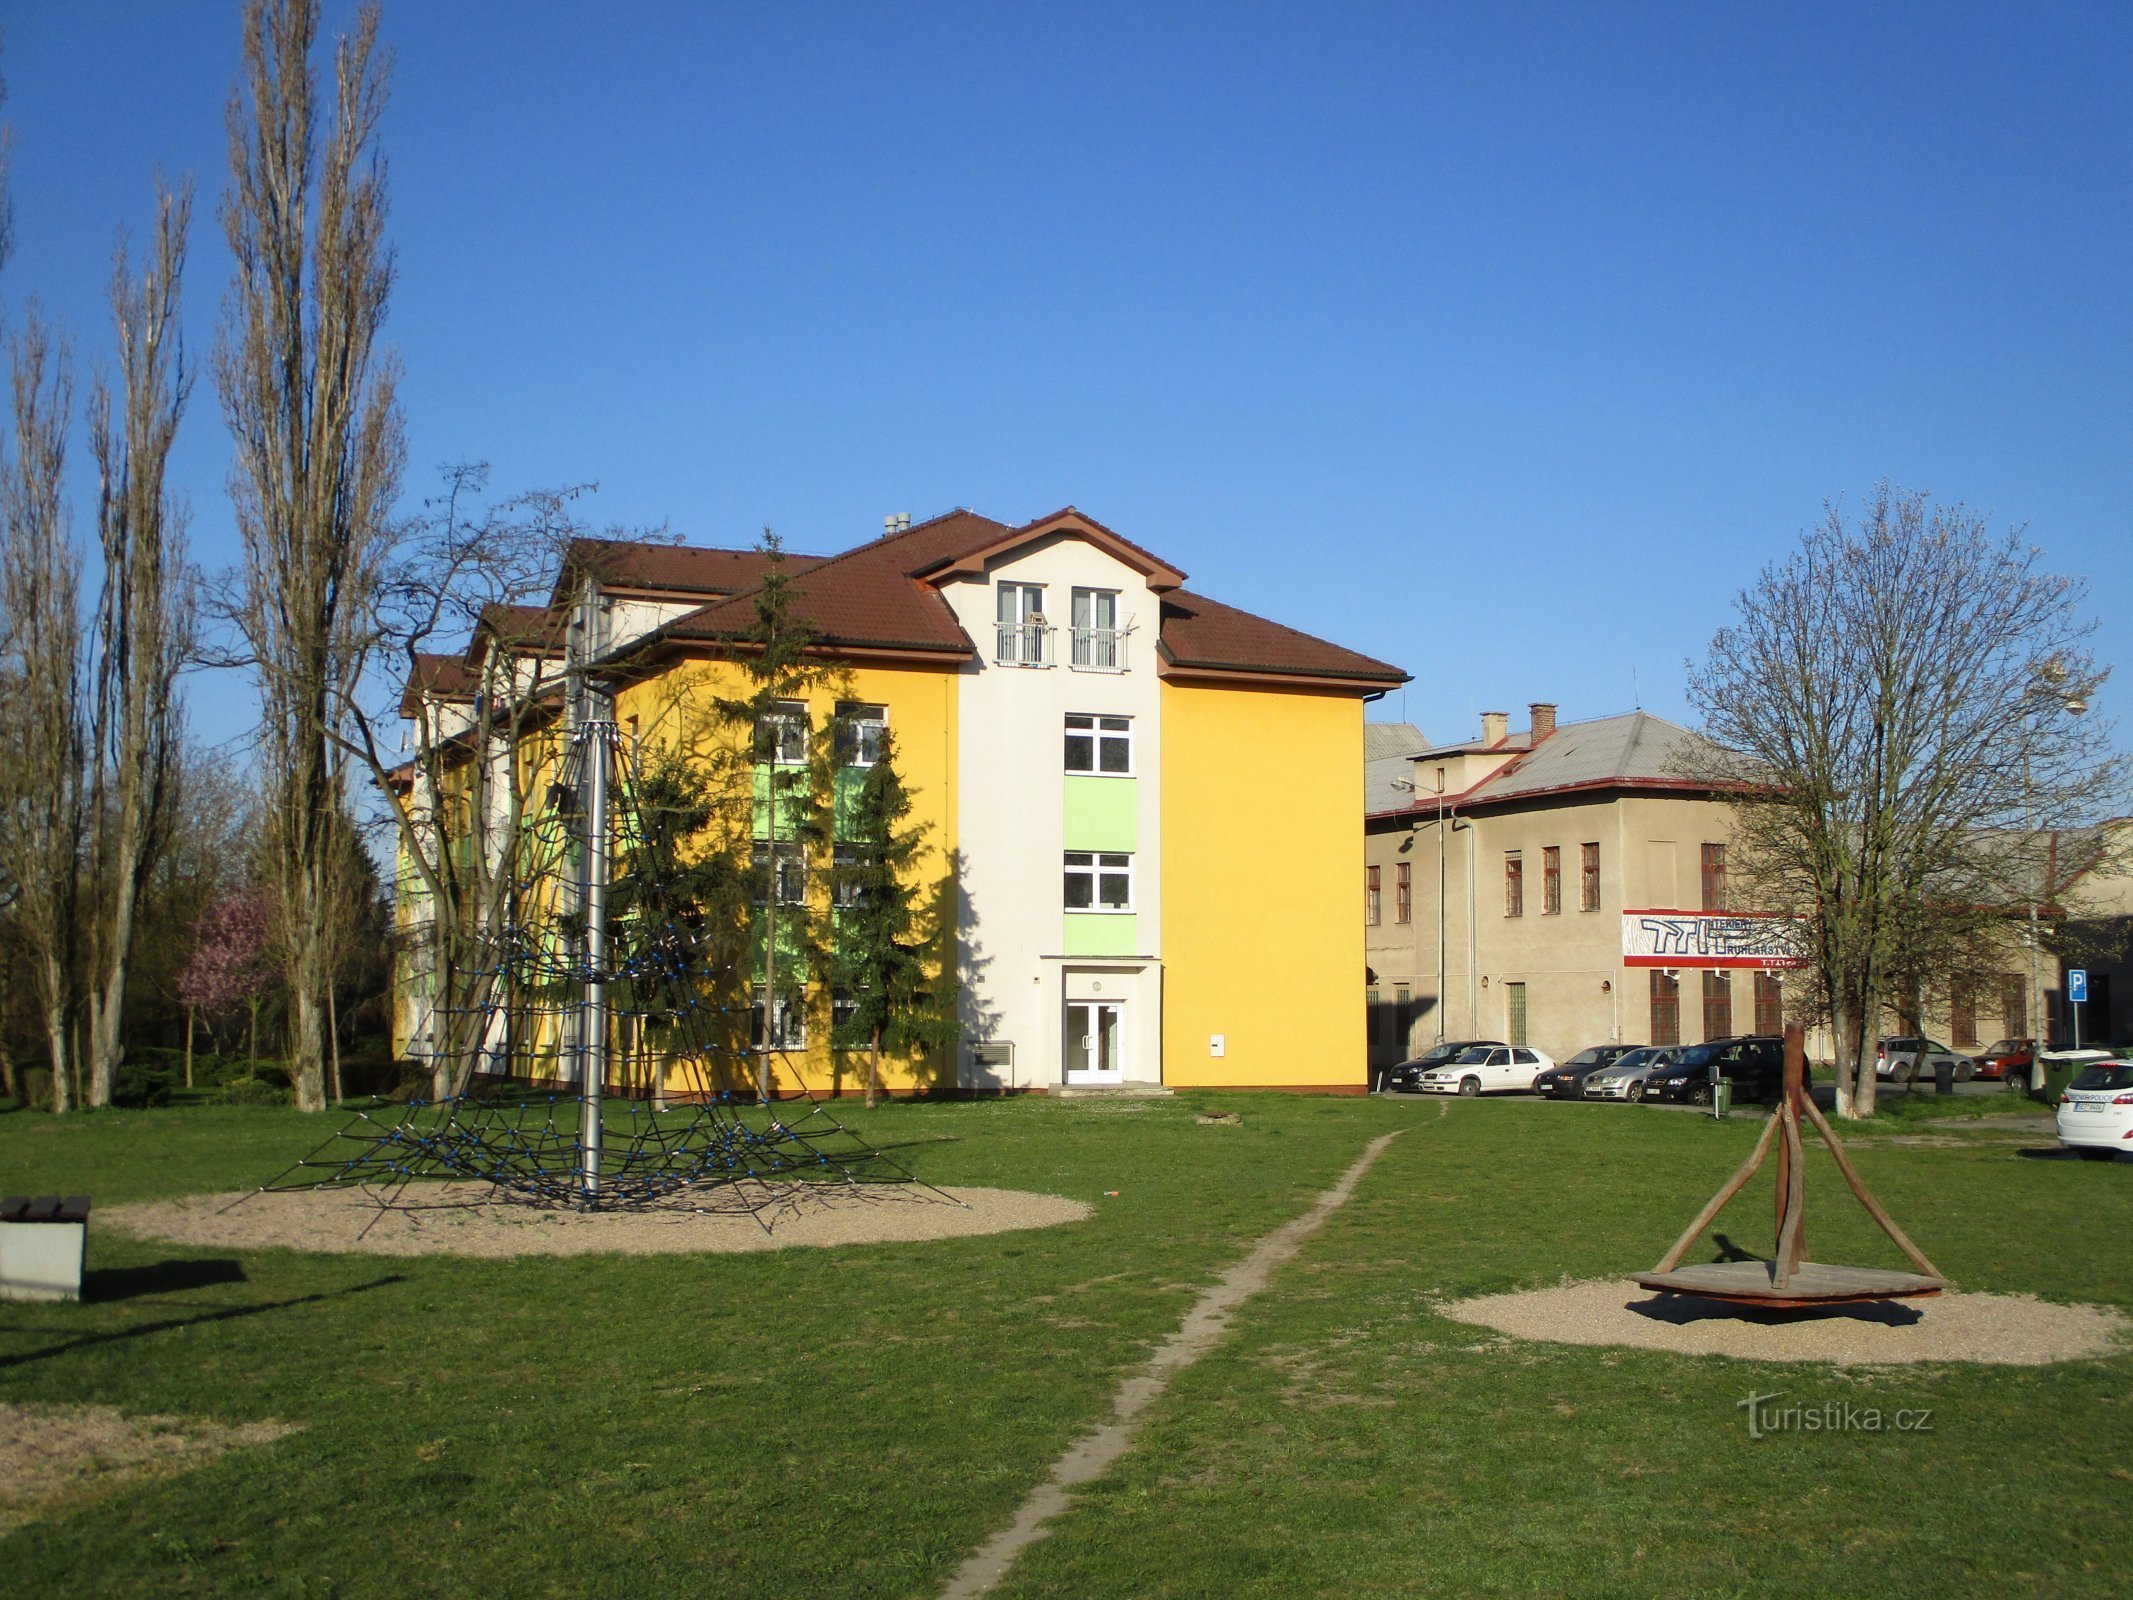 Område af den tidligere sukkerfabrik (Opatovice nad Labem, 12.4.2020. april XNUMX)